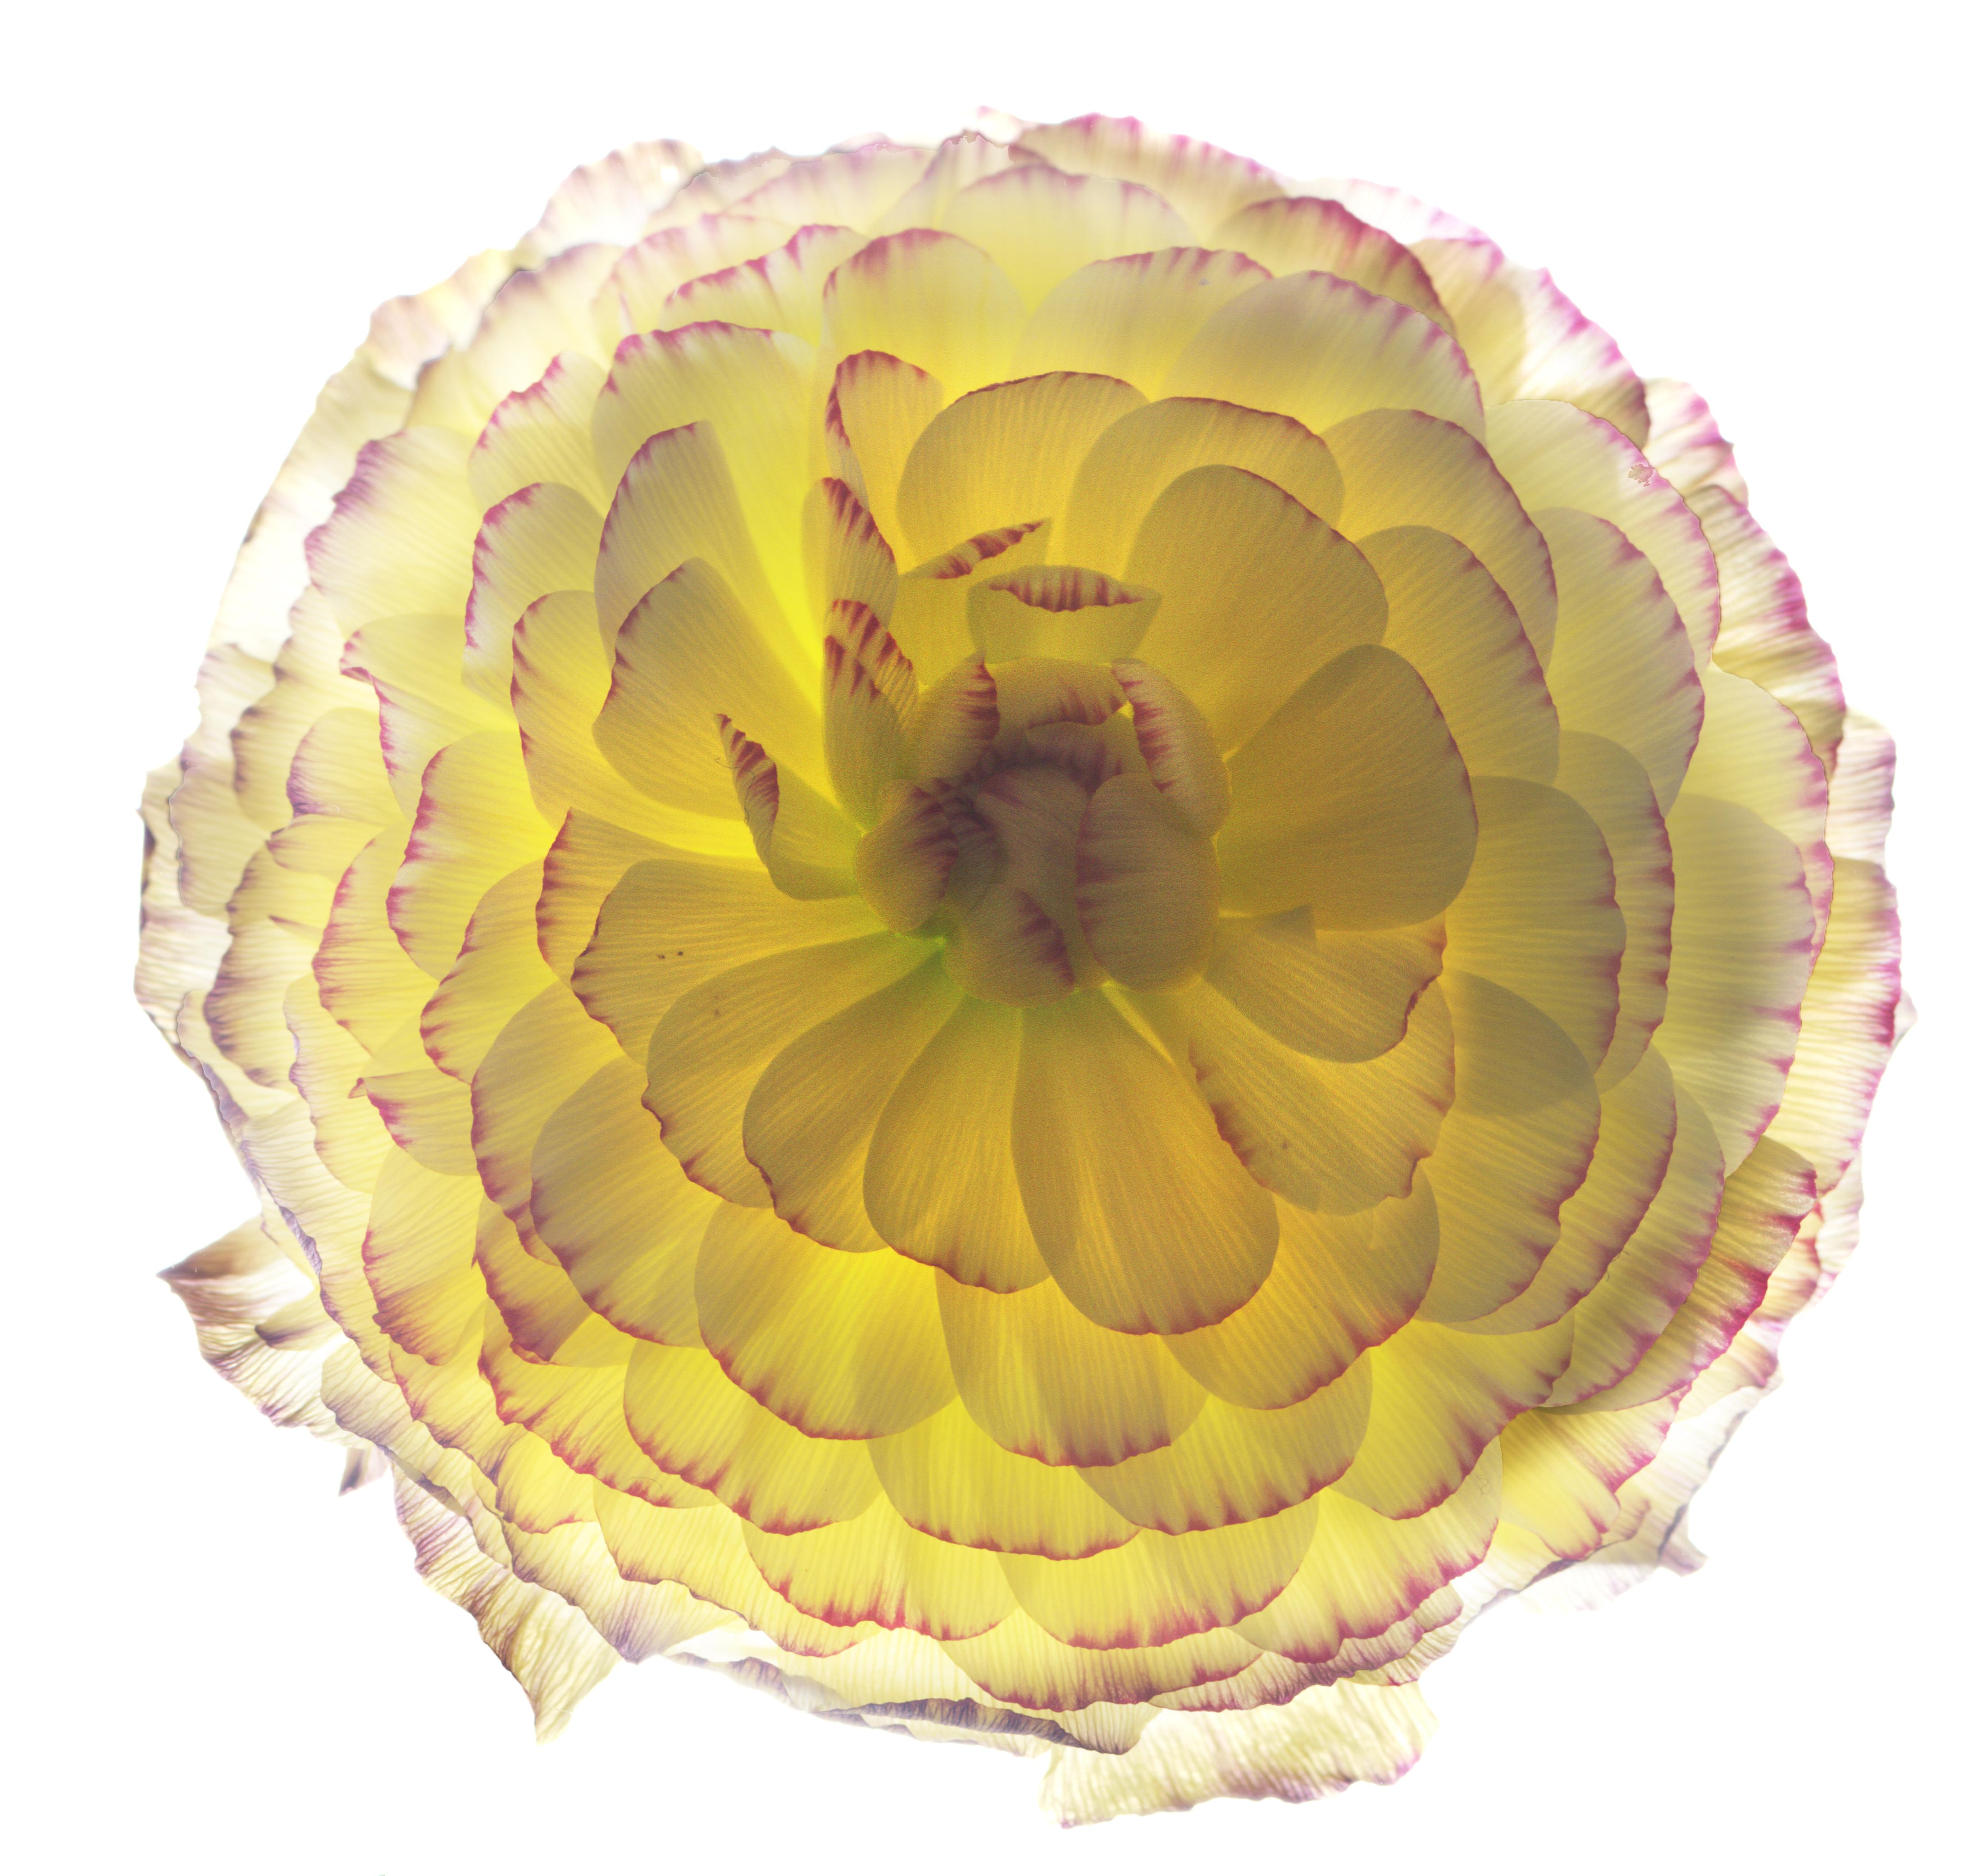 Unbenannte Blume # 152
Hahnemuhle Photo Rag Matte Papier mit Epson Tinte in Archivierungsqualität
Auflage von 25 Stück
Verfügbare Größen:
11" x 14"
20" x 24"
30" x 30"
30" x 40"
40" x 40"
48" x 48"
48" x 60"
60" x 60"

Seit 1997 benutze ich einen